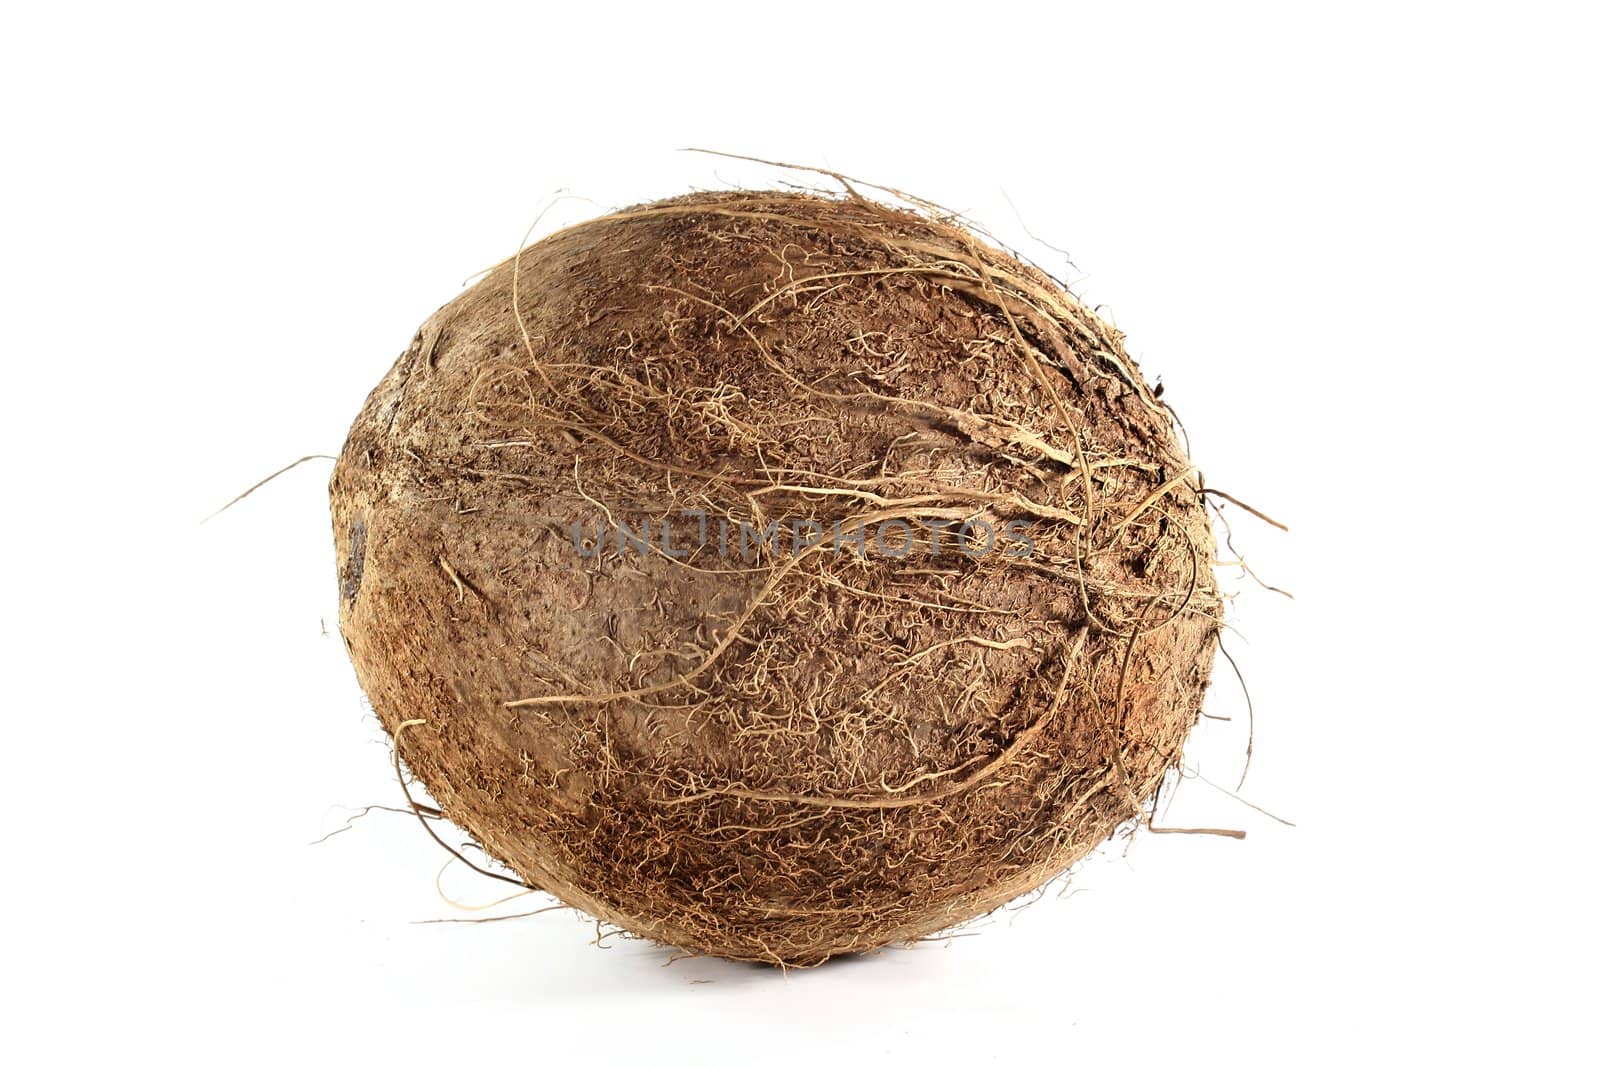 Coconut by silencefoto